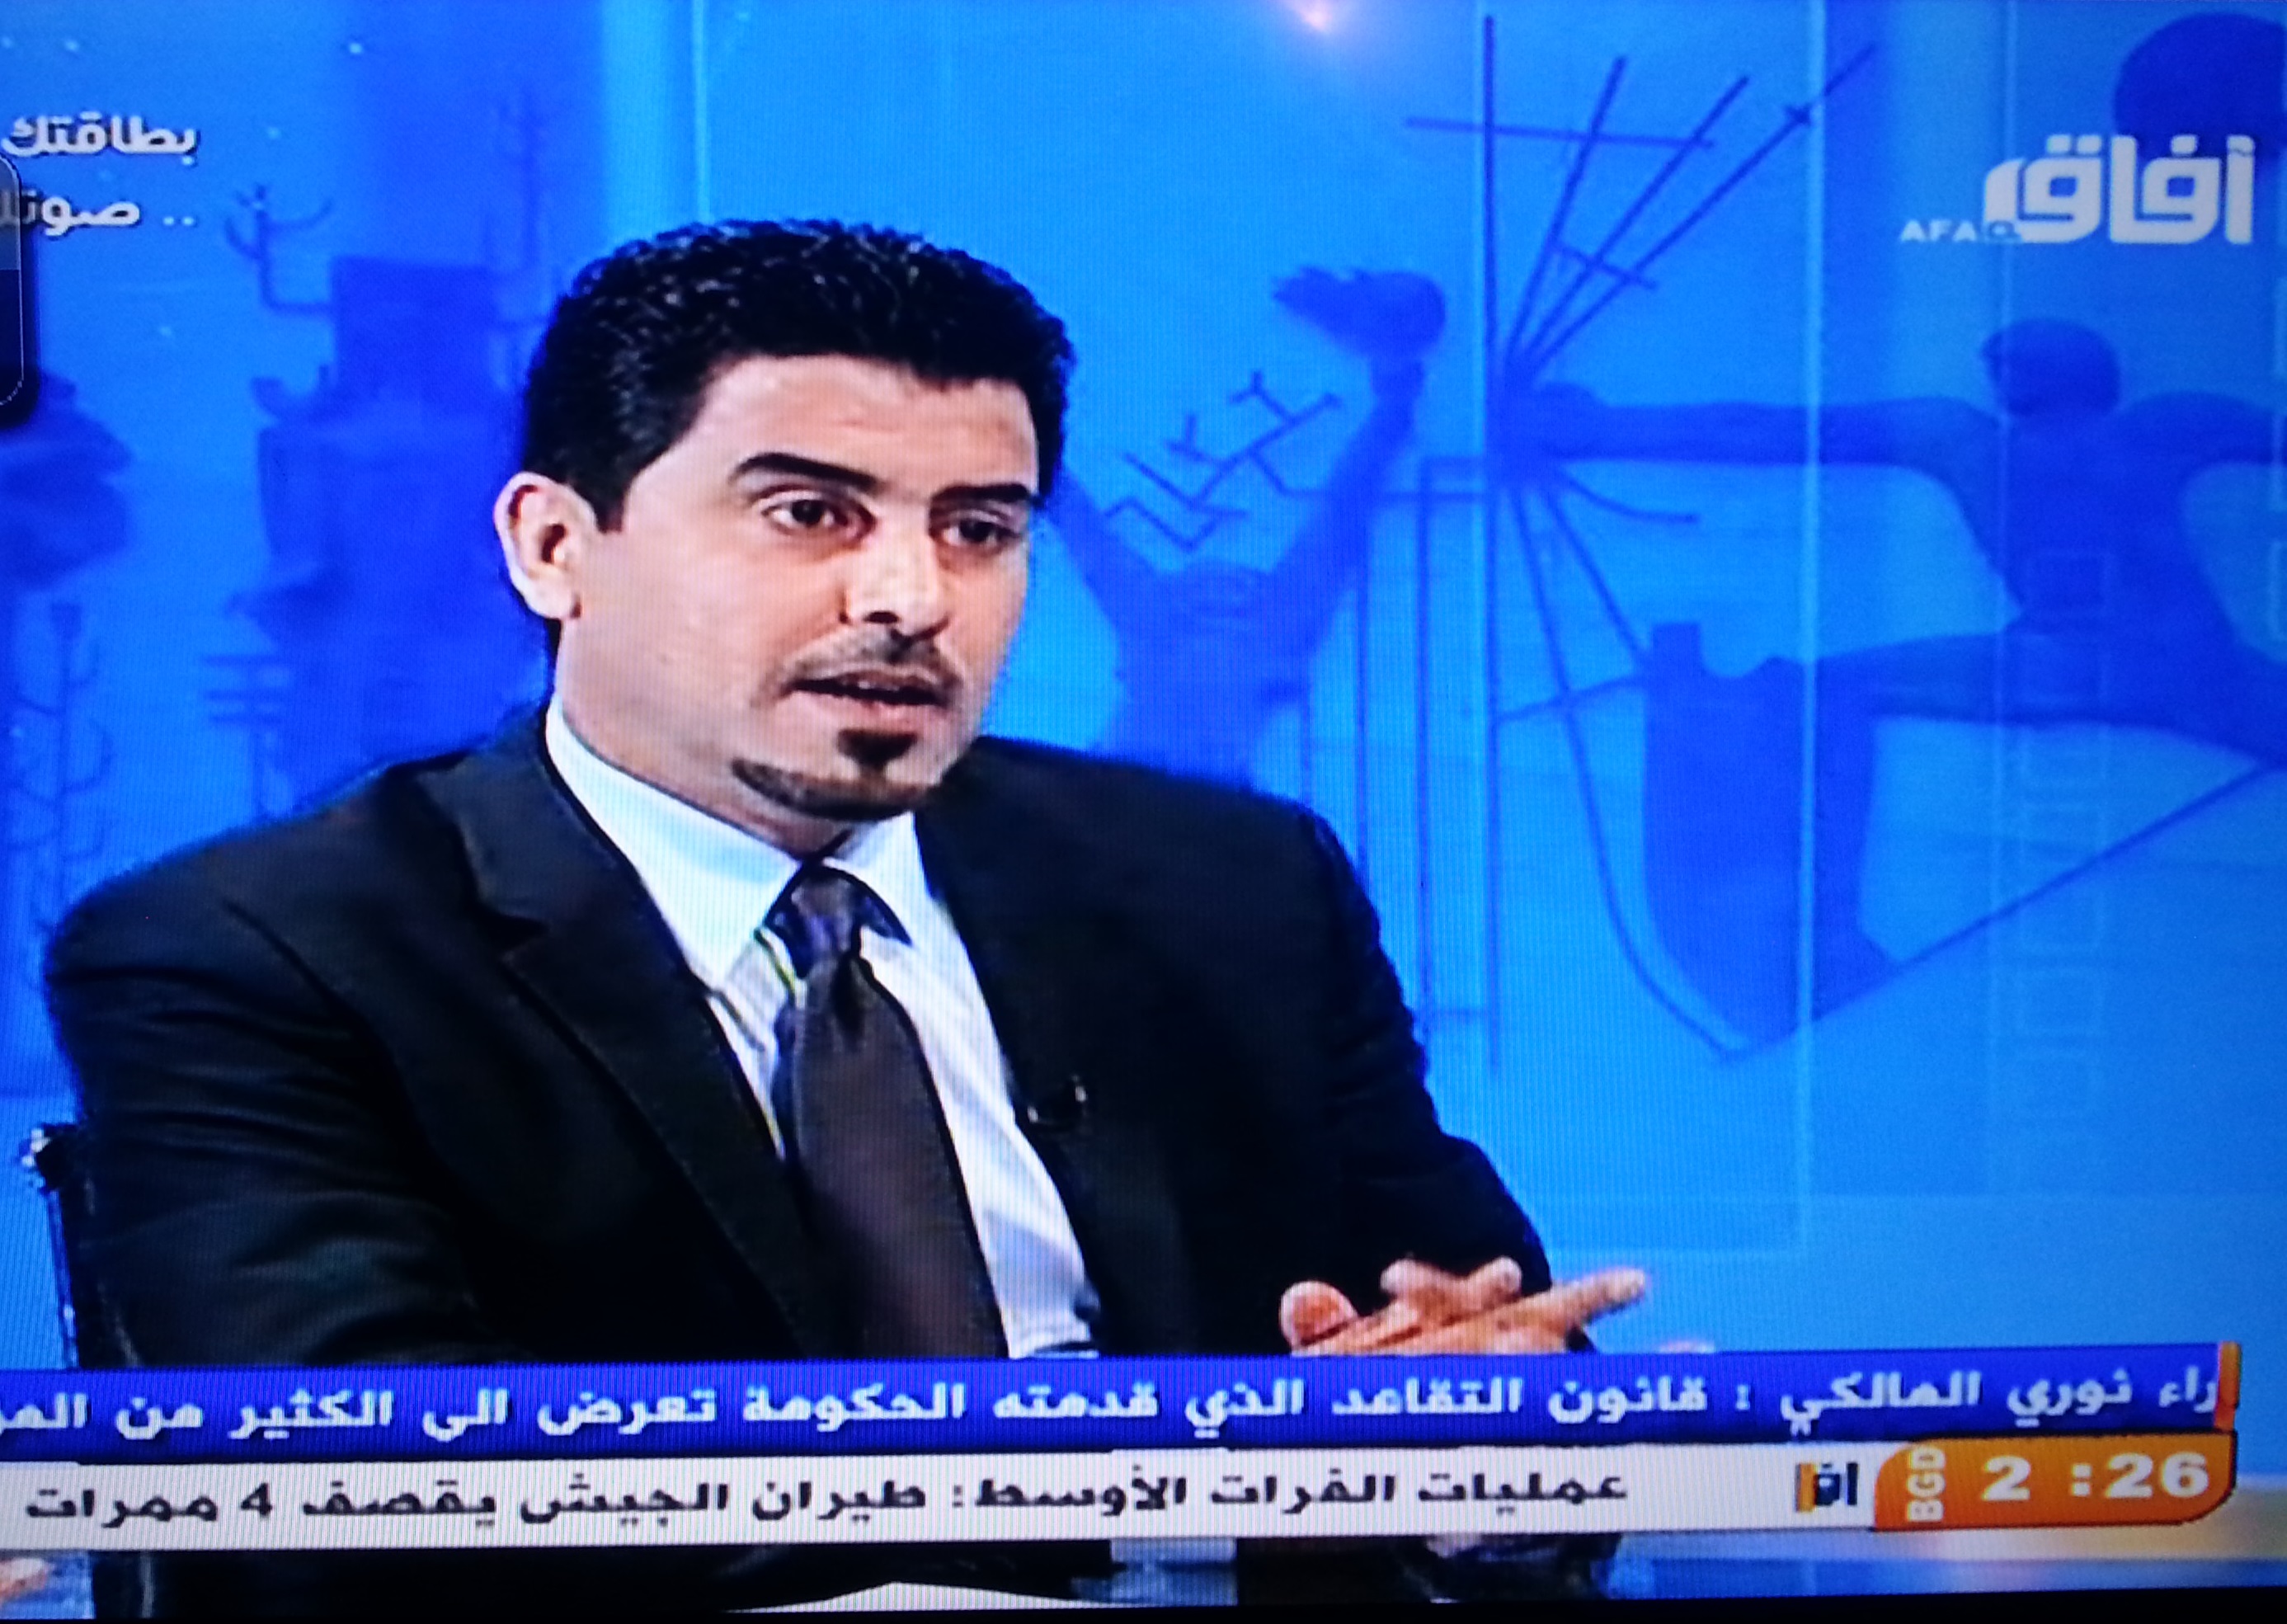 احمد ملا طلال: الحكومة القادمة ستكون برئاسة المالكي لانه الافضل !